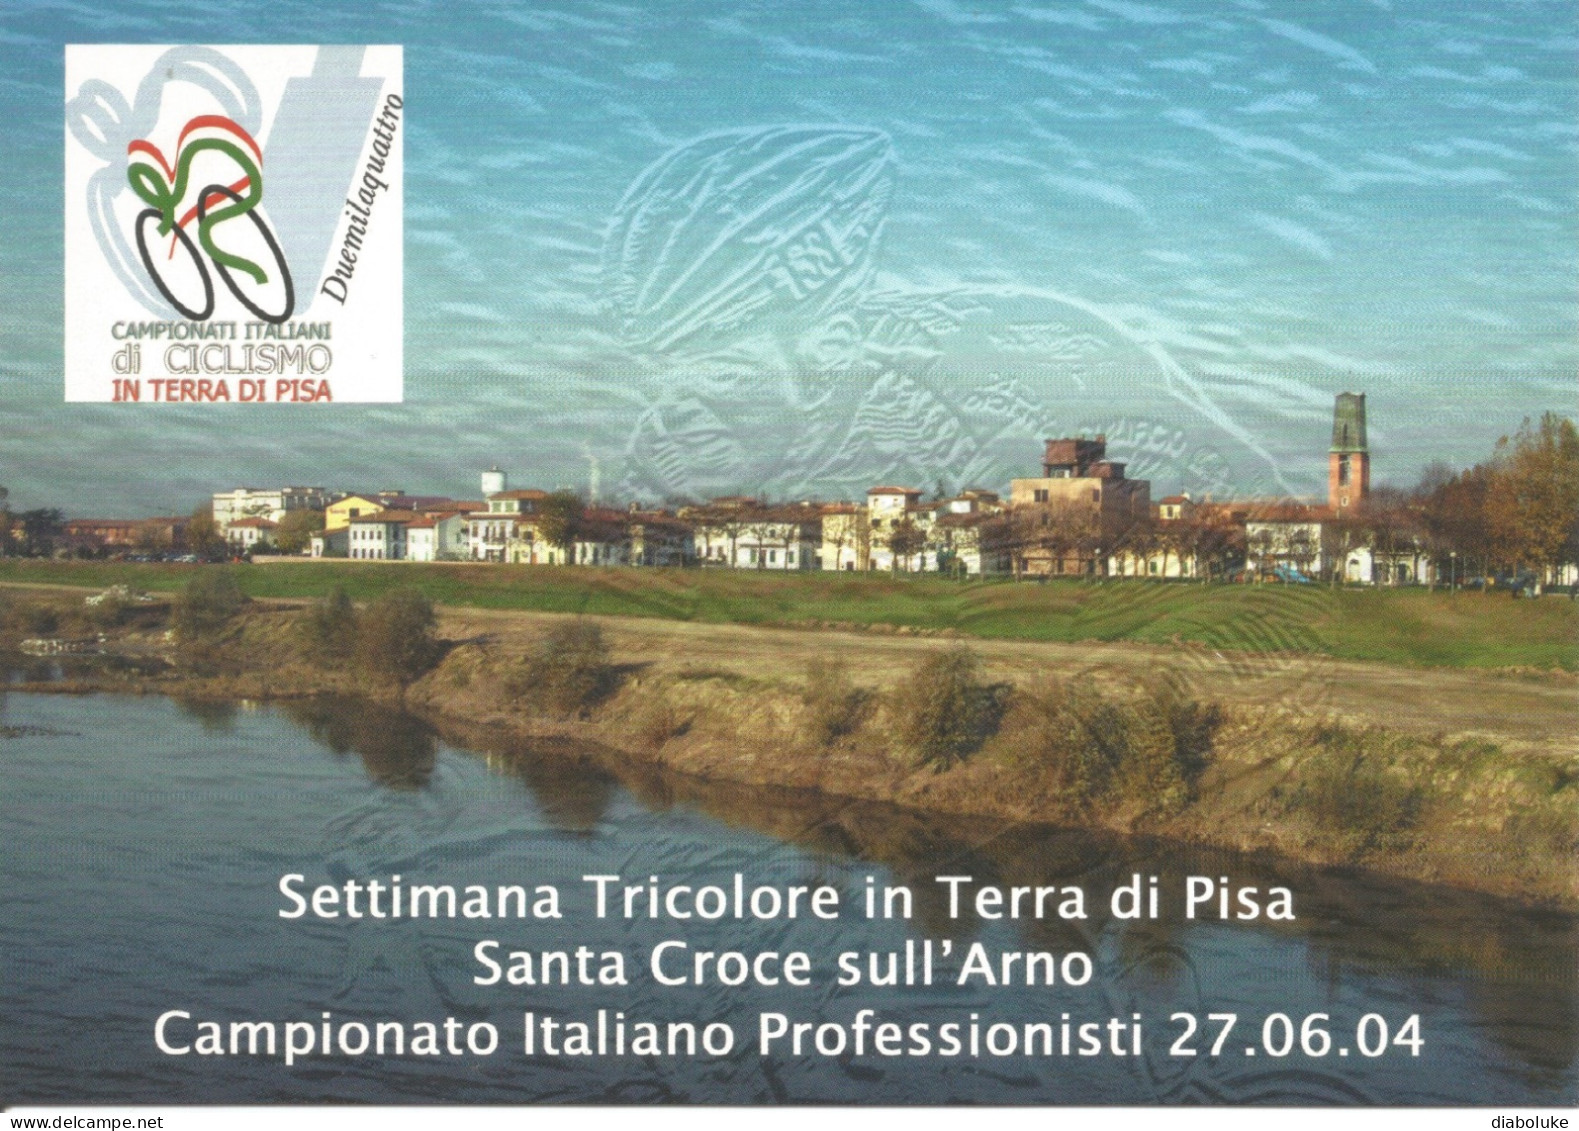 (VARIOUS) SETTIMANA TRICOLORE IN TERRA DI PISA, SANTA CROCE SULL'ARNO, 27/6/2004 - Cartolina Nuova - Demonstrations